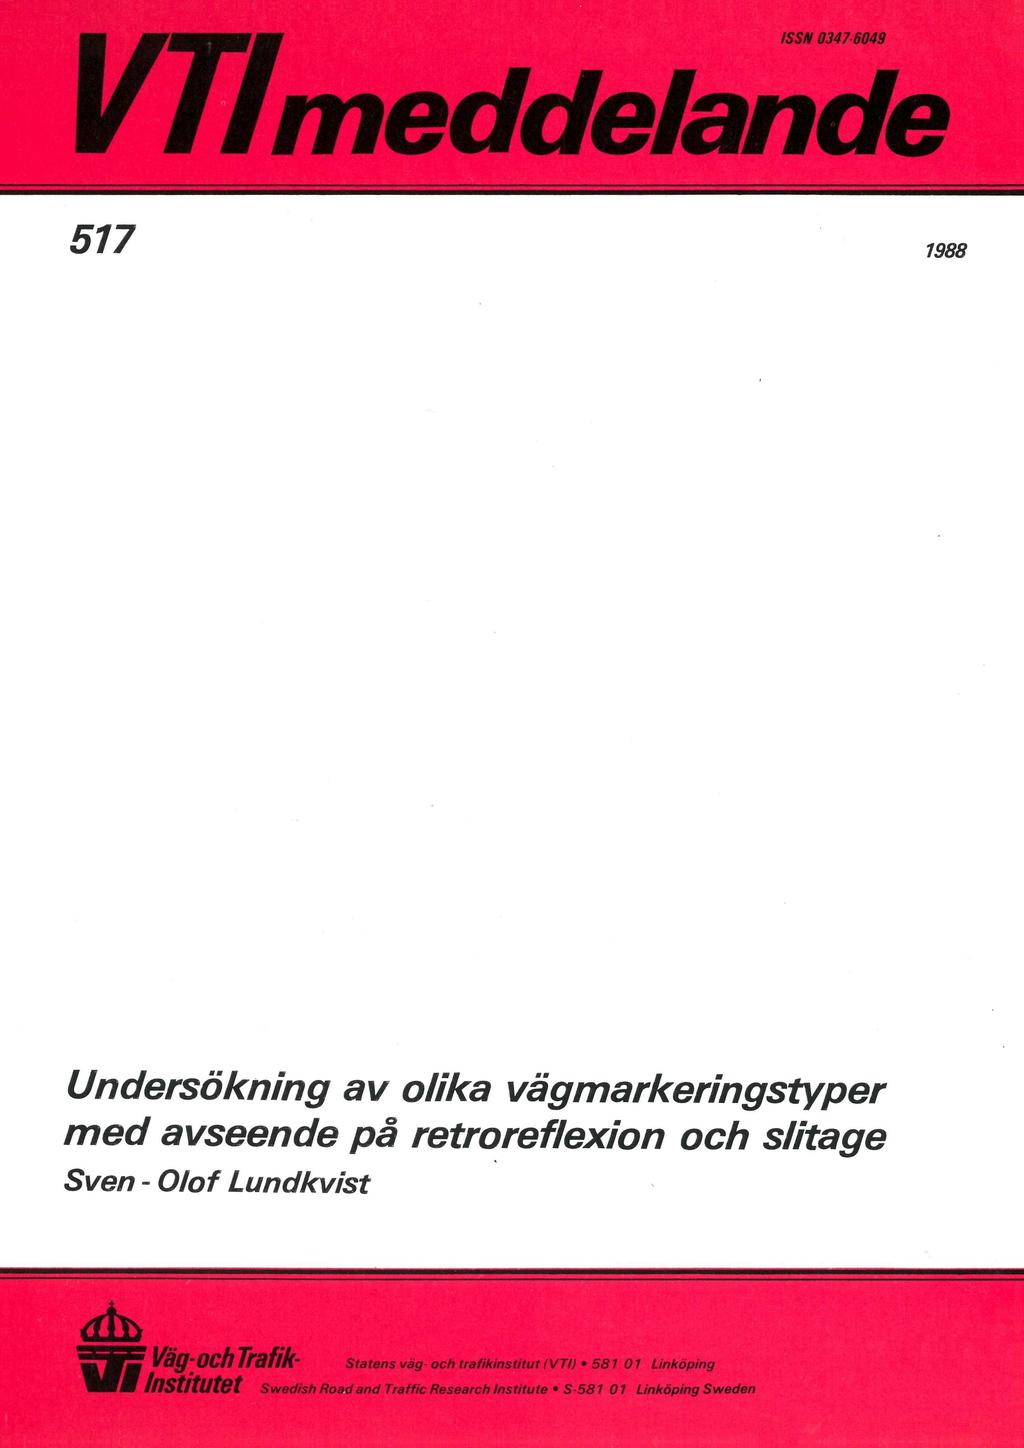 ISSN 0347-6049 i V//meddelande i 517 1988 Undersökning av olika vägmarkeringstyper med avseende på retroreflexion och slitage Sven - Olof Lundkvist v,